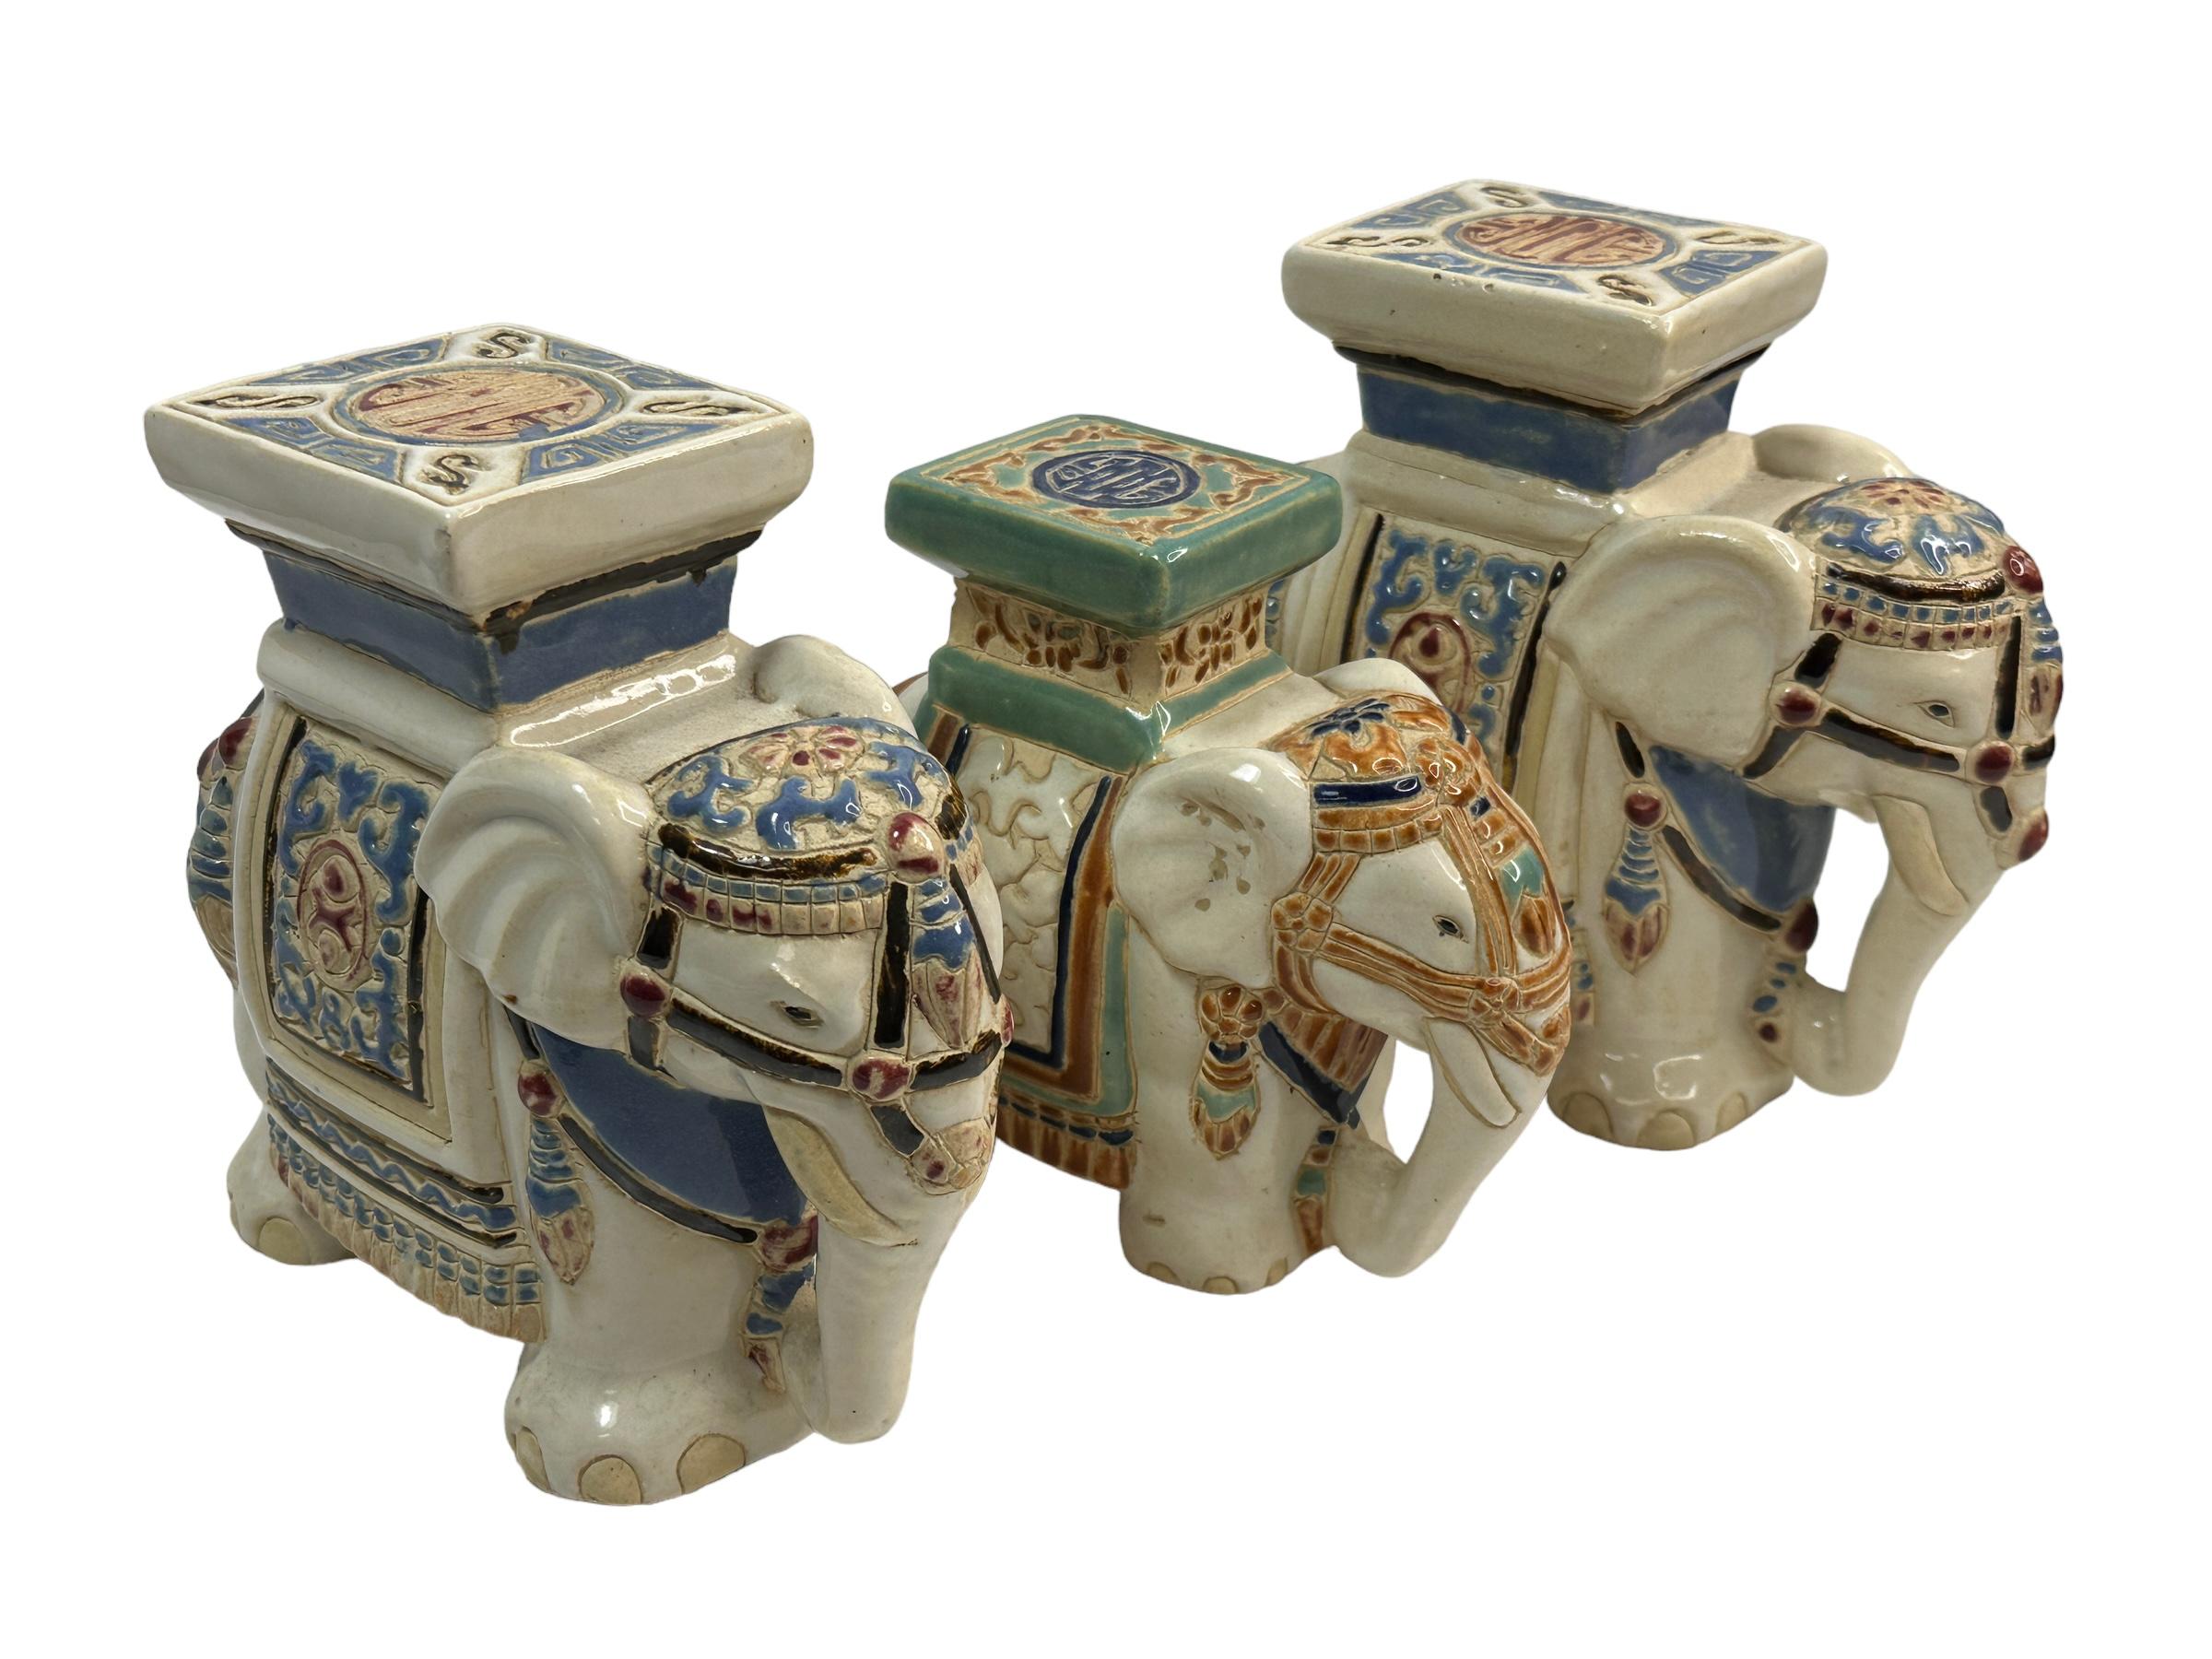 Un ensemble de trois petits sièges de pots de fleurs d'éléphants en céramique émaillée du milieu du 20e siècle. Fabriqué à la main en céramique. Une belle addition à votre maison, votre patio ou votre jardin. Trouvé dans une vente immobilière à